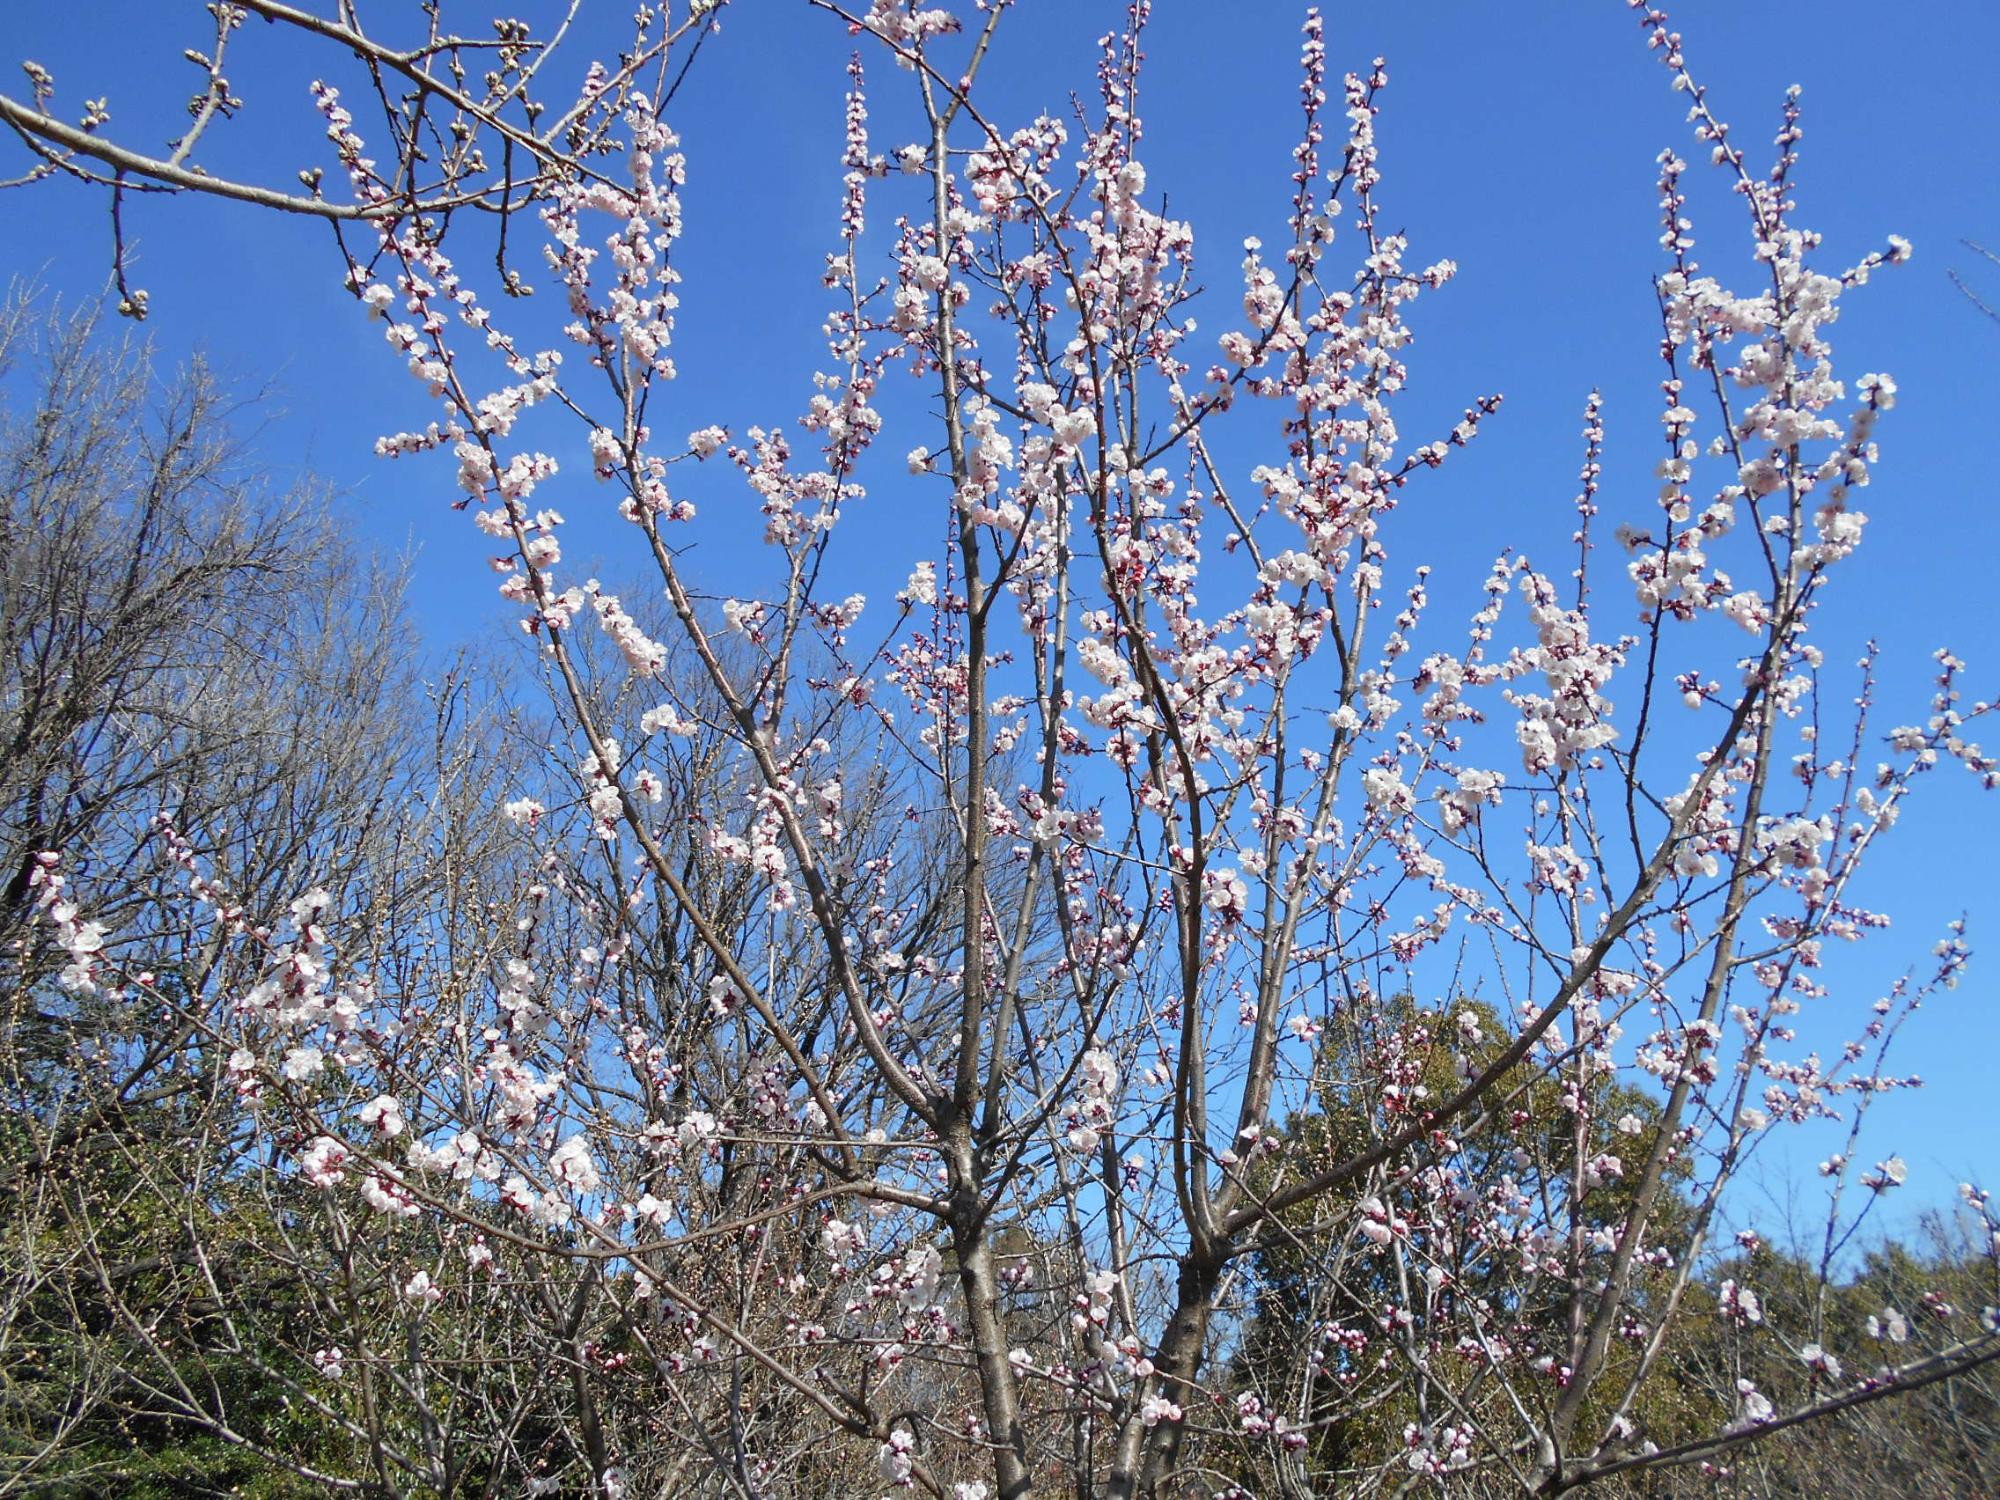 ハナモモの丘では、2本の木に花が咲きました。他の木もつぼみが膨らんできています。